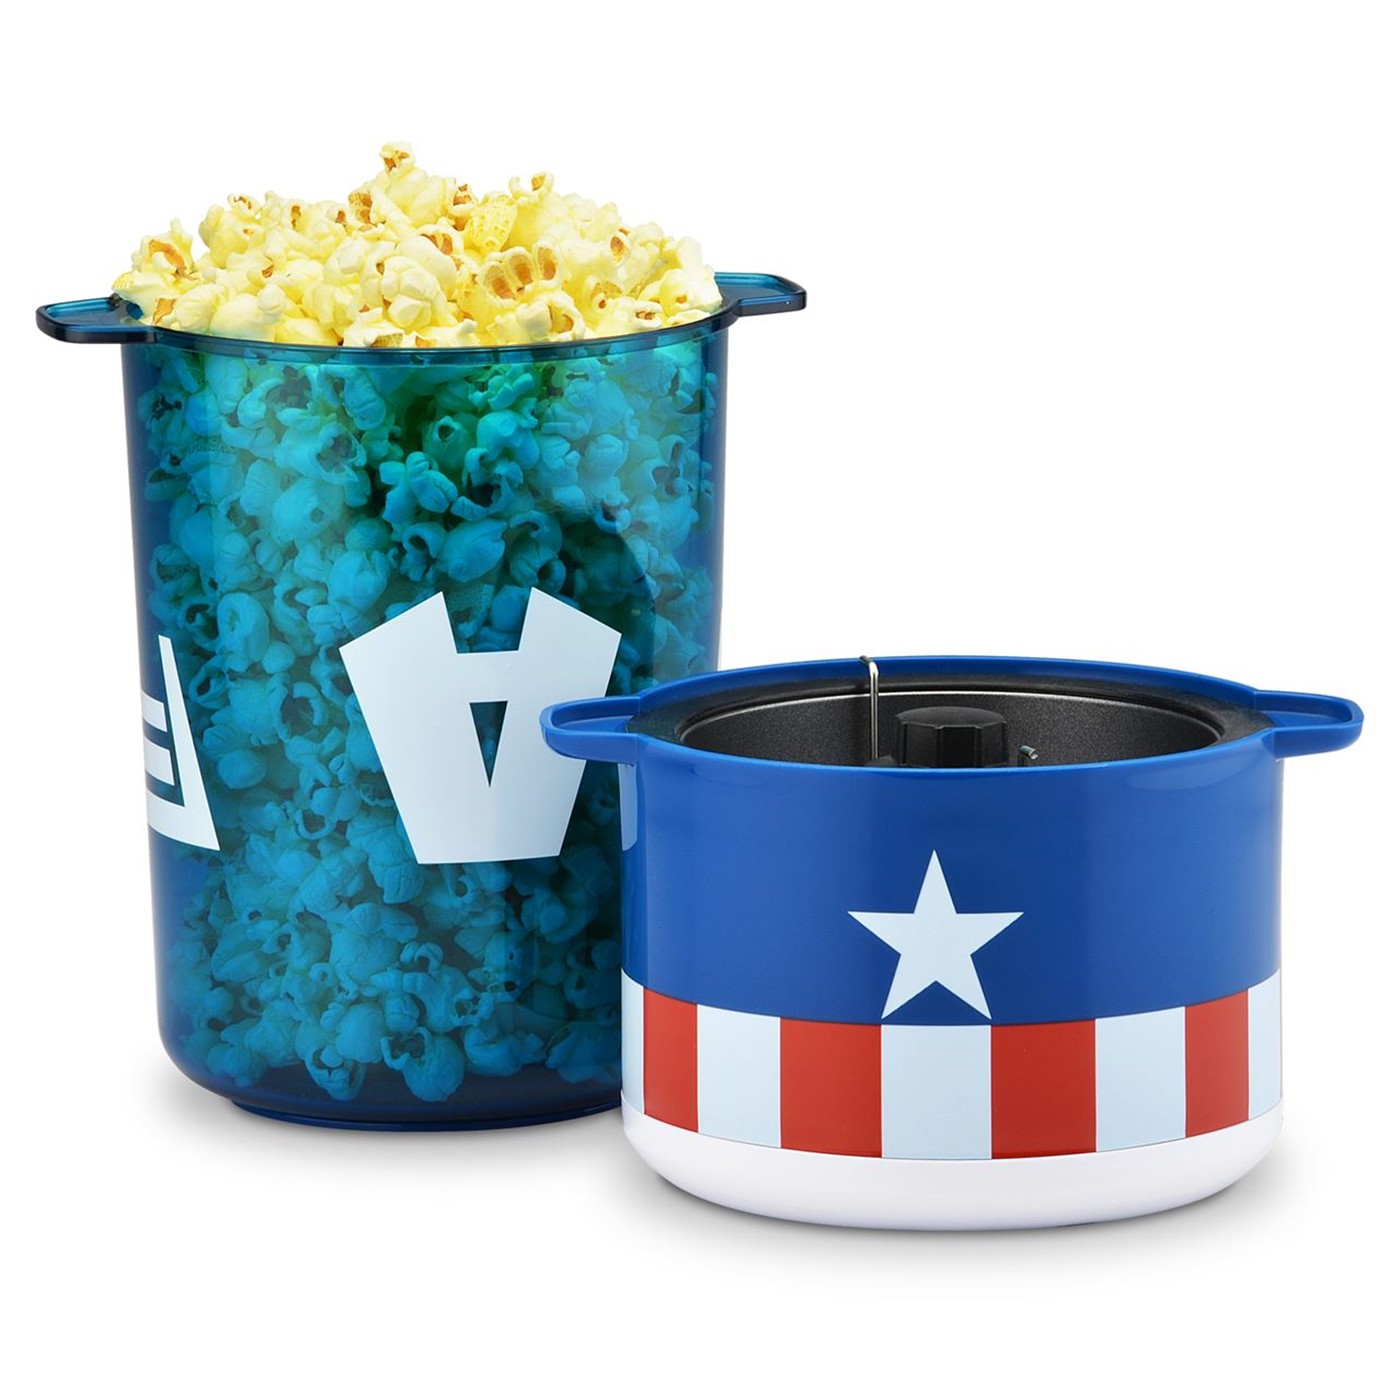 Captain America Stir Popcorn Popper